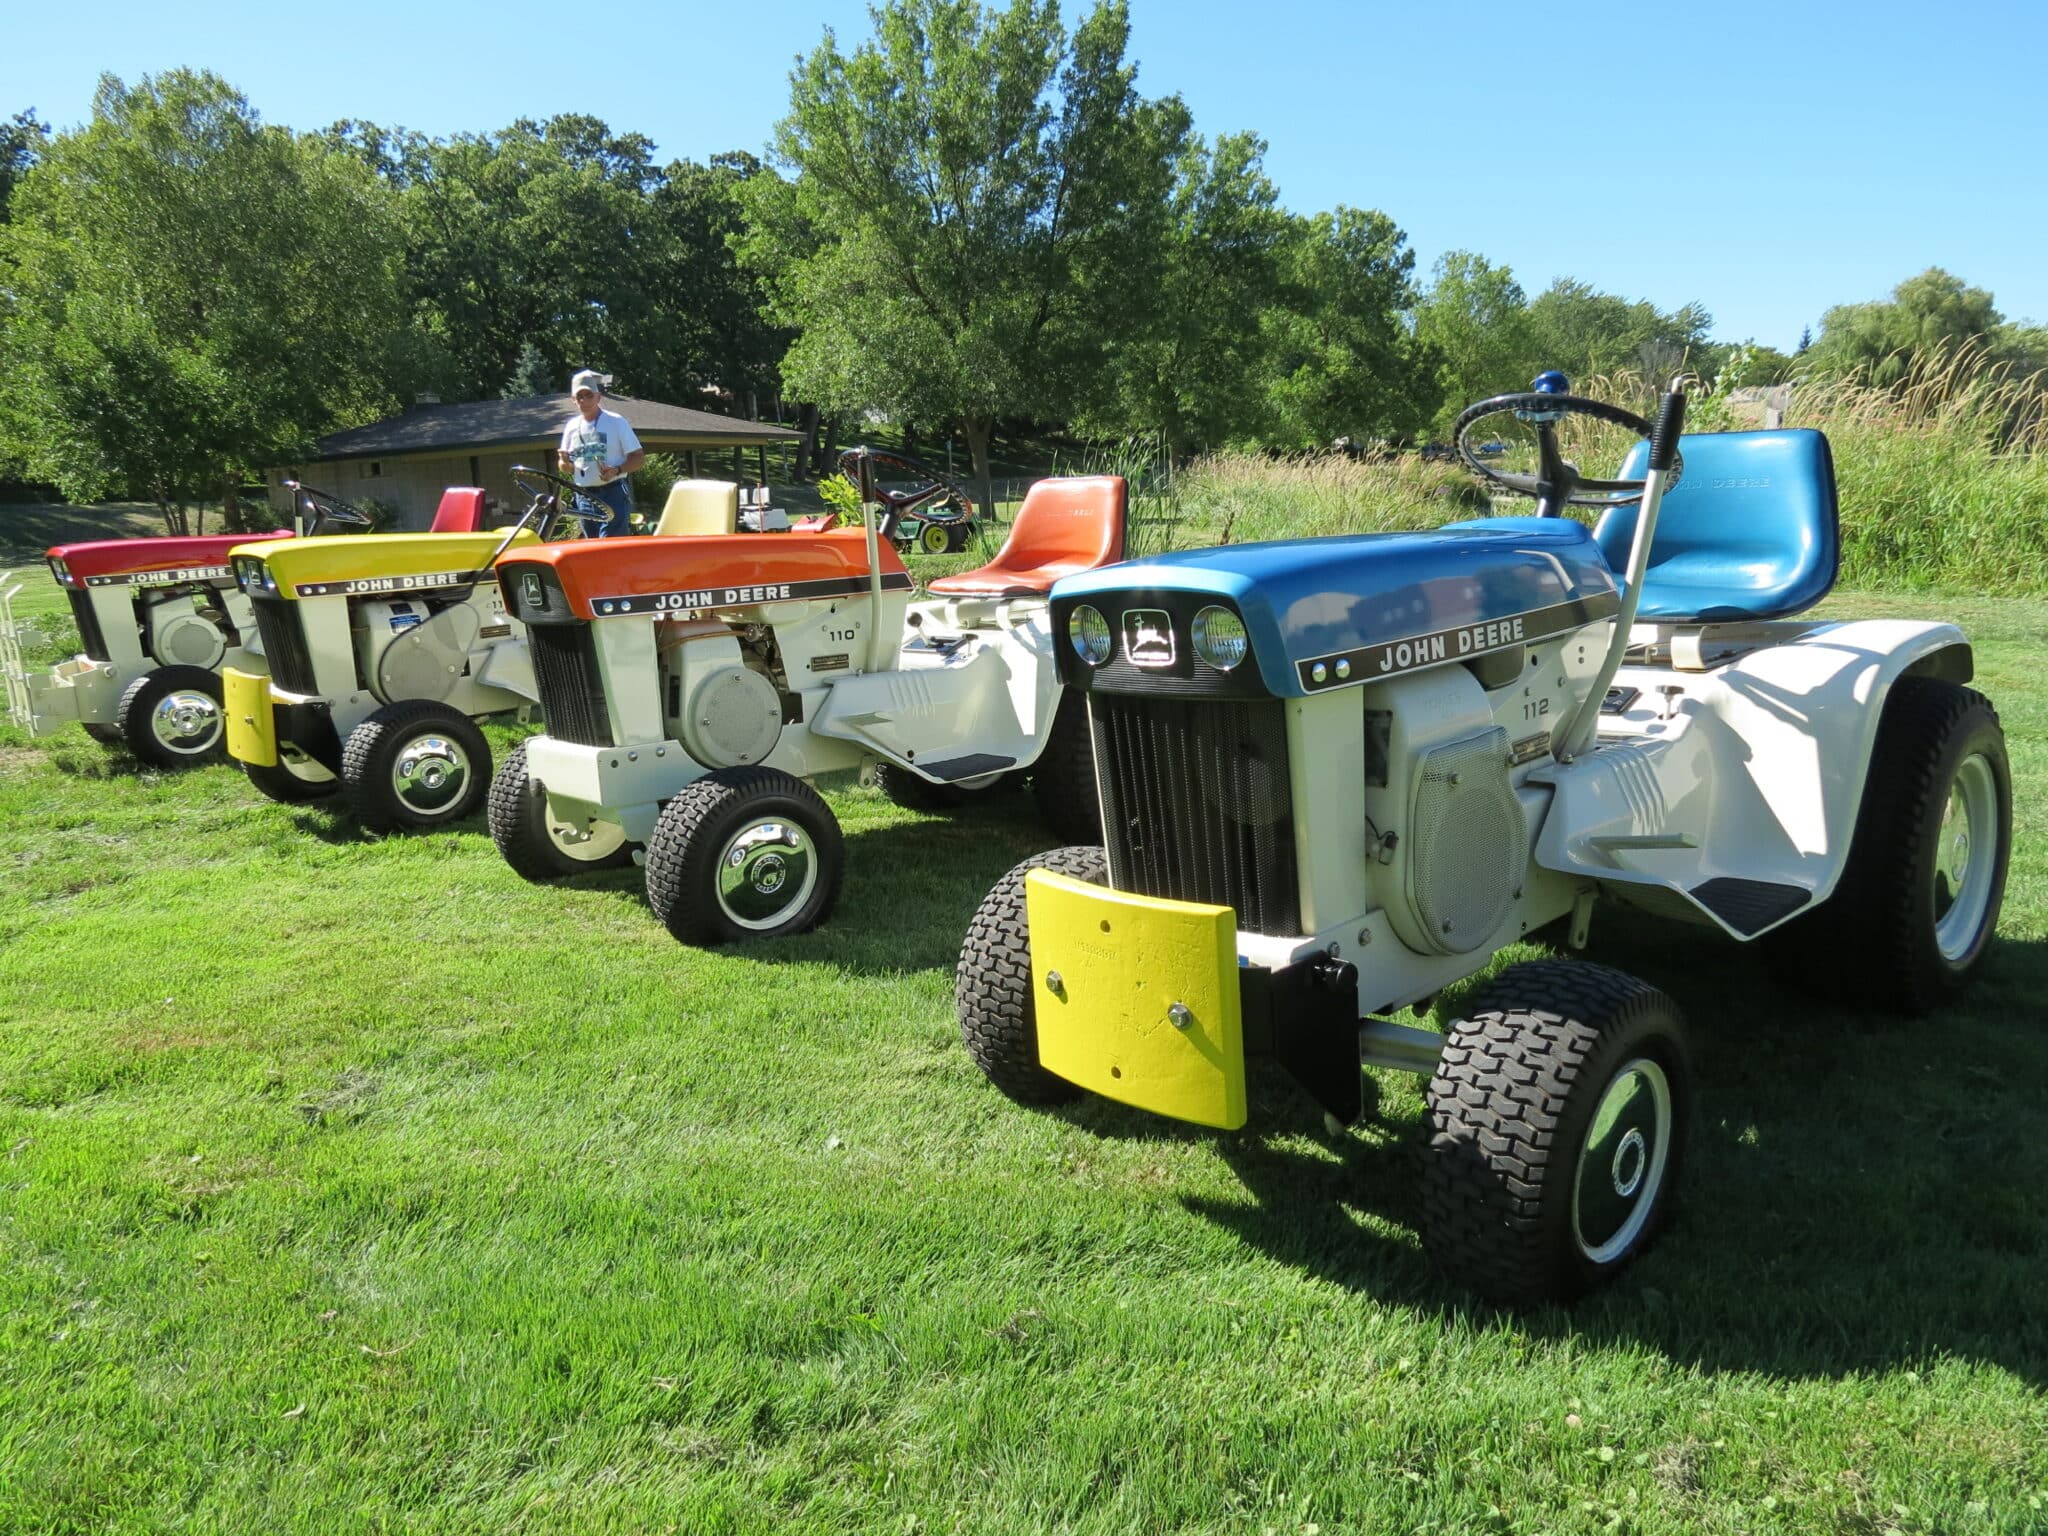 John Deere Lawn and Garden Patio Tractors